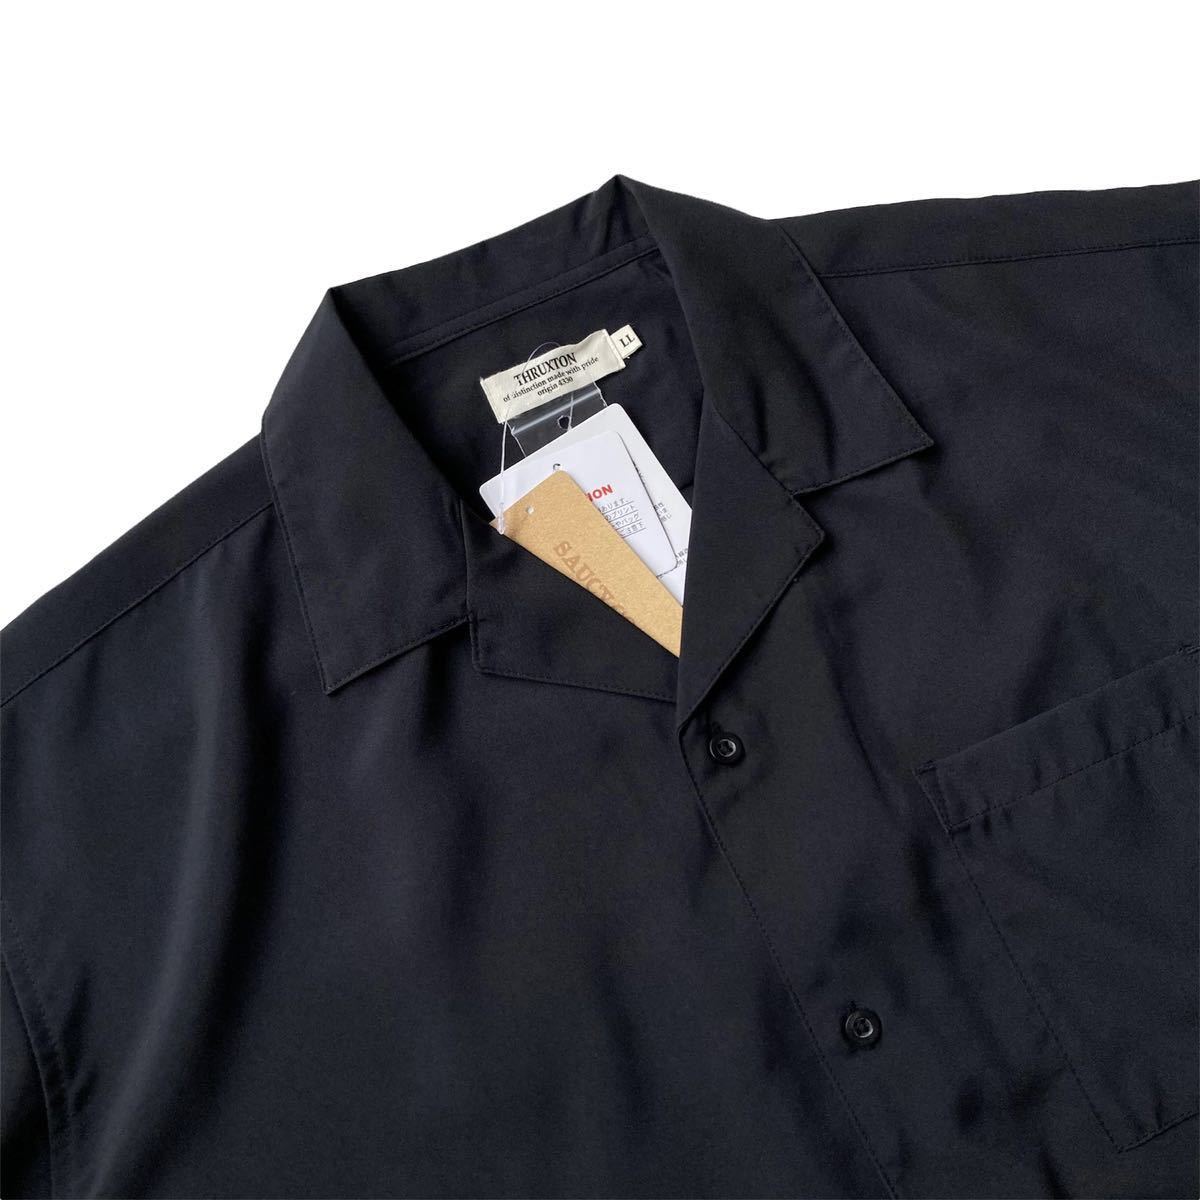 新品 レトロ【クラシックピザ】刺繍ボウリングシャツ XL ブラック ポリシャツ 半袖 オープンカラー ボーリングシャツ ビッグシルエット 5